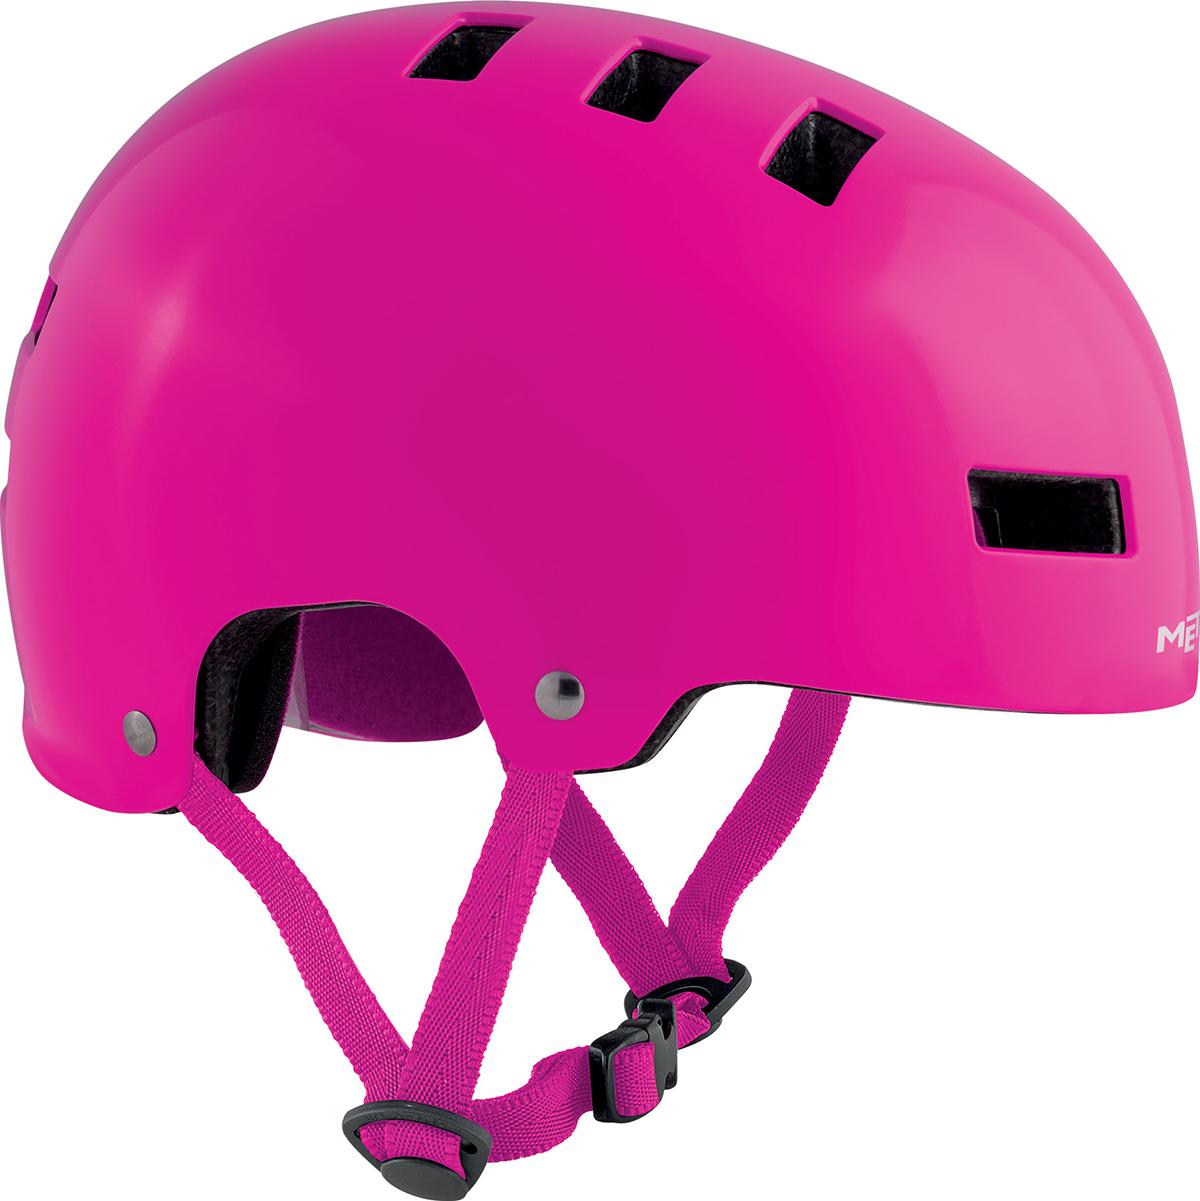 Met Yoyo Helmet - Pink